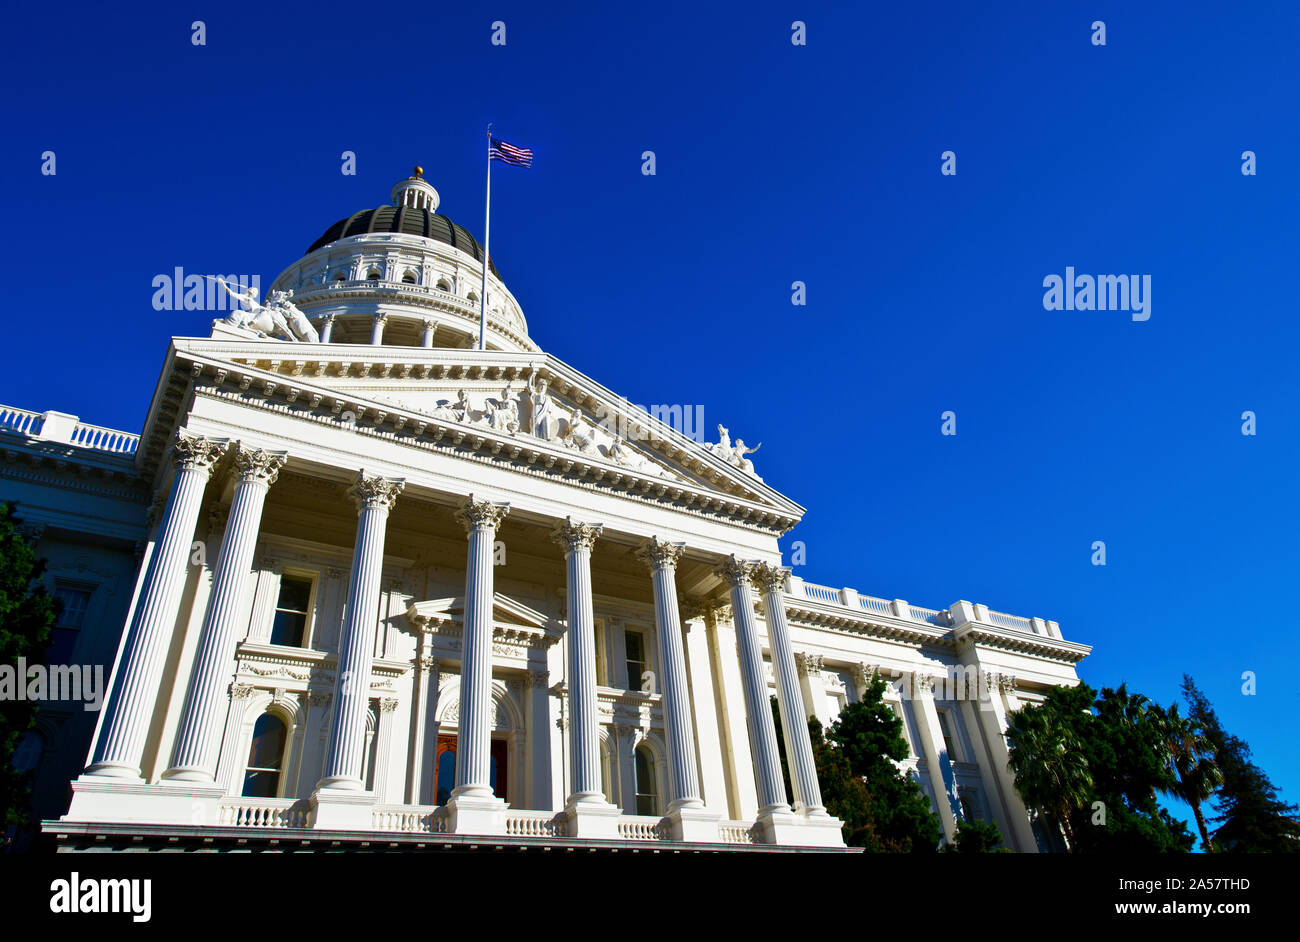 Facade of the California State Capitol, Sacramento, California, USA Stock Photo